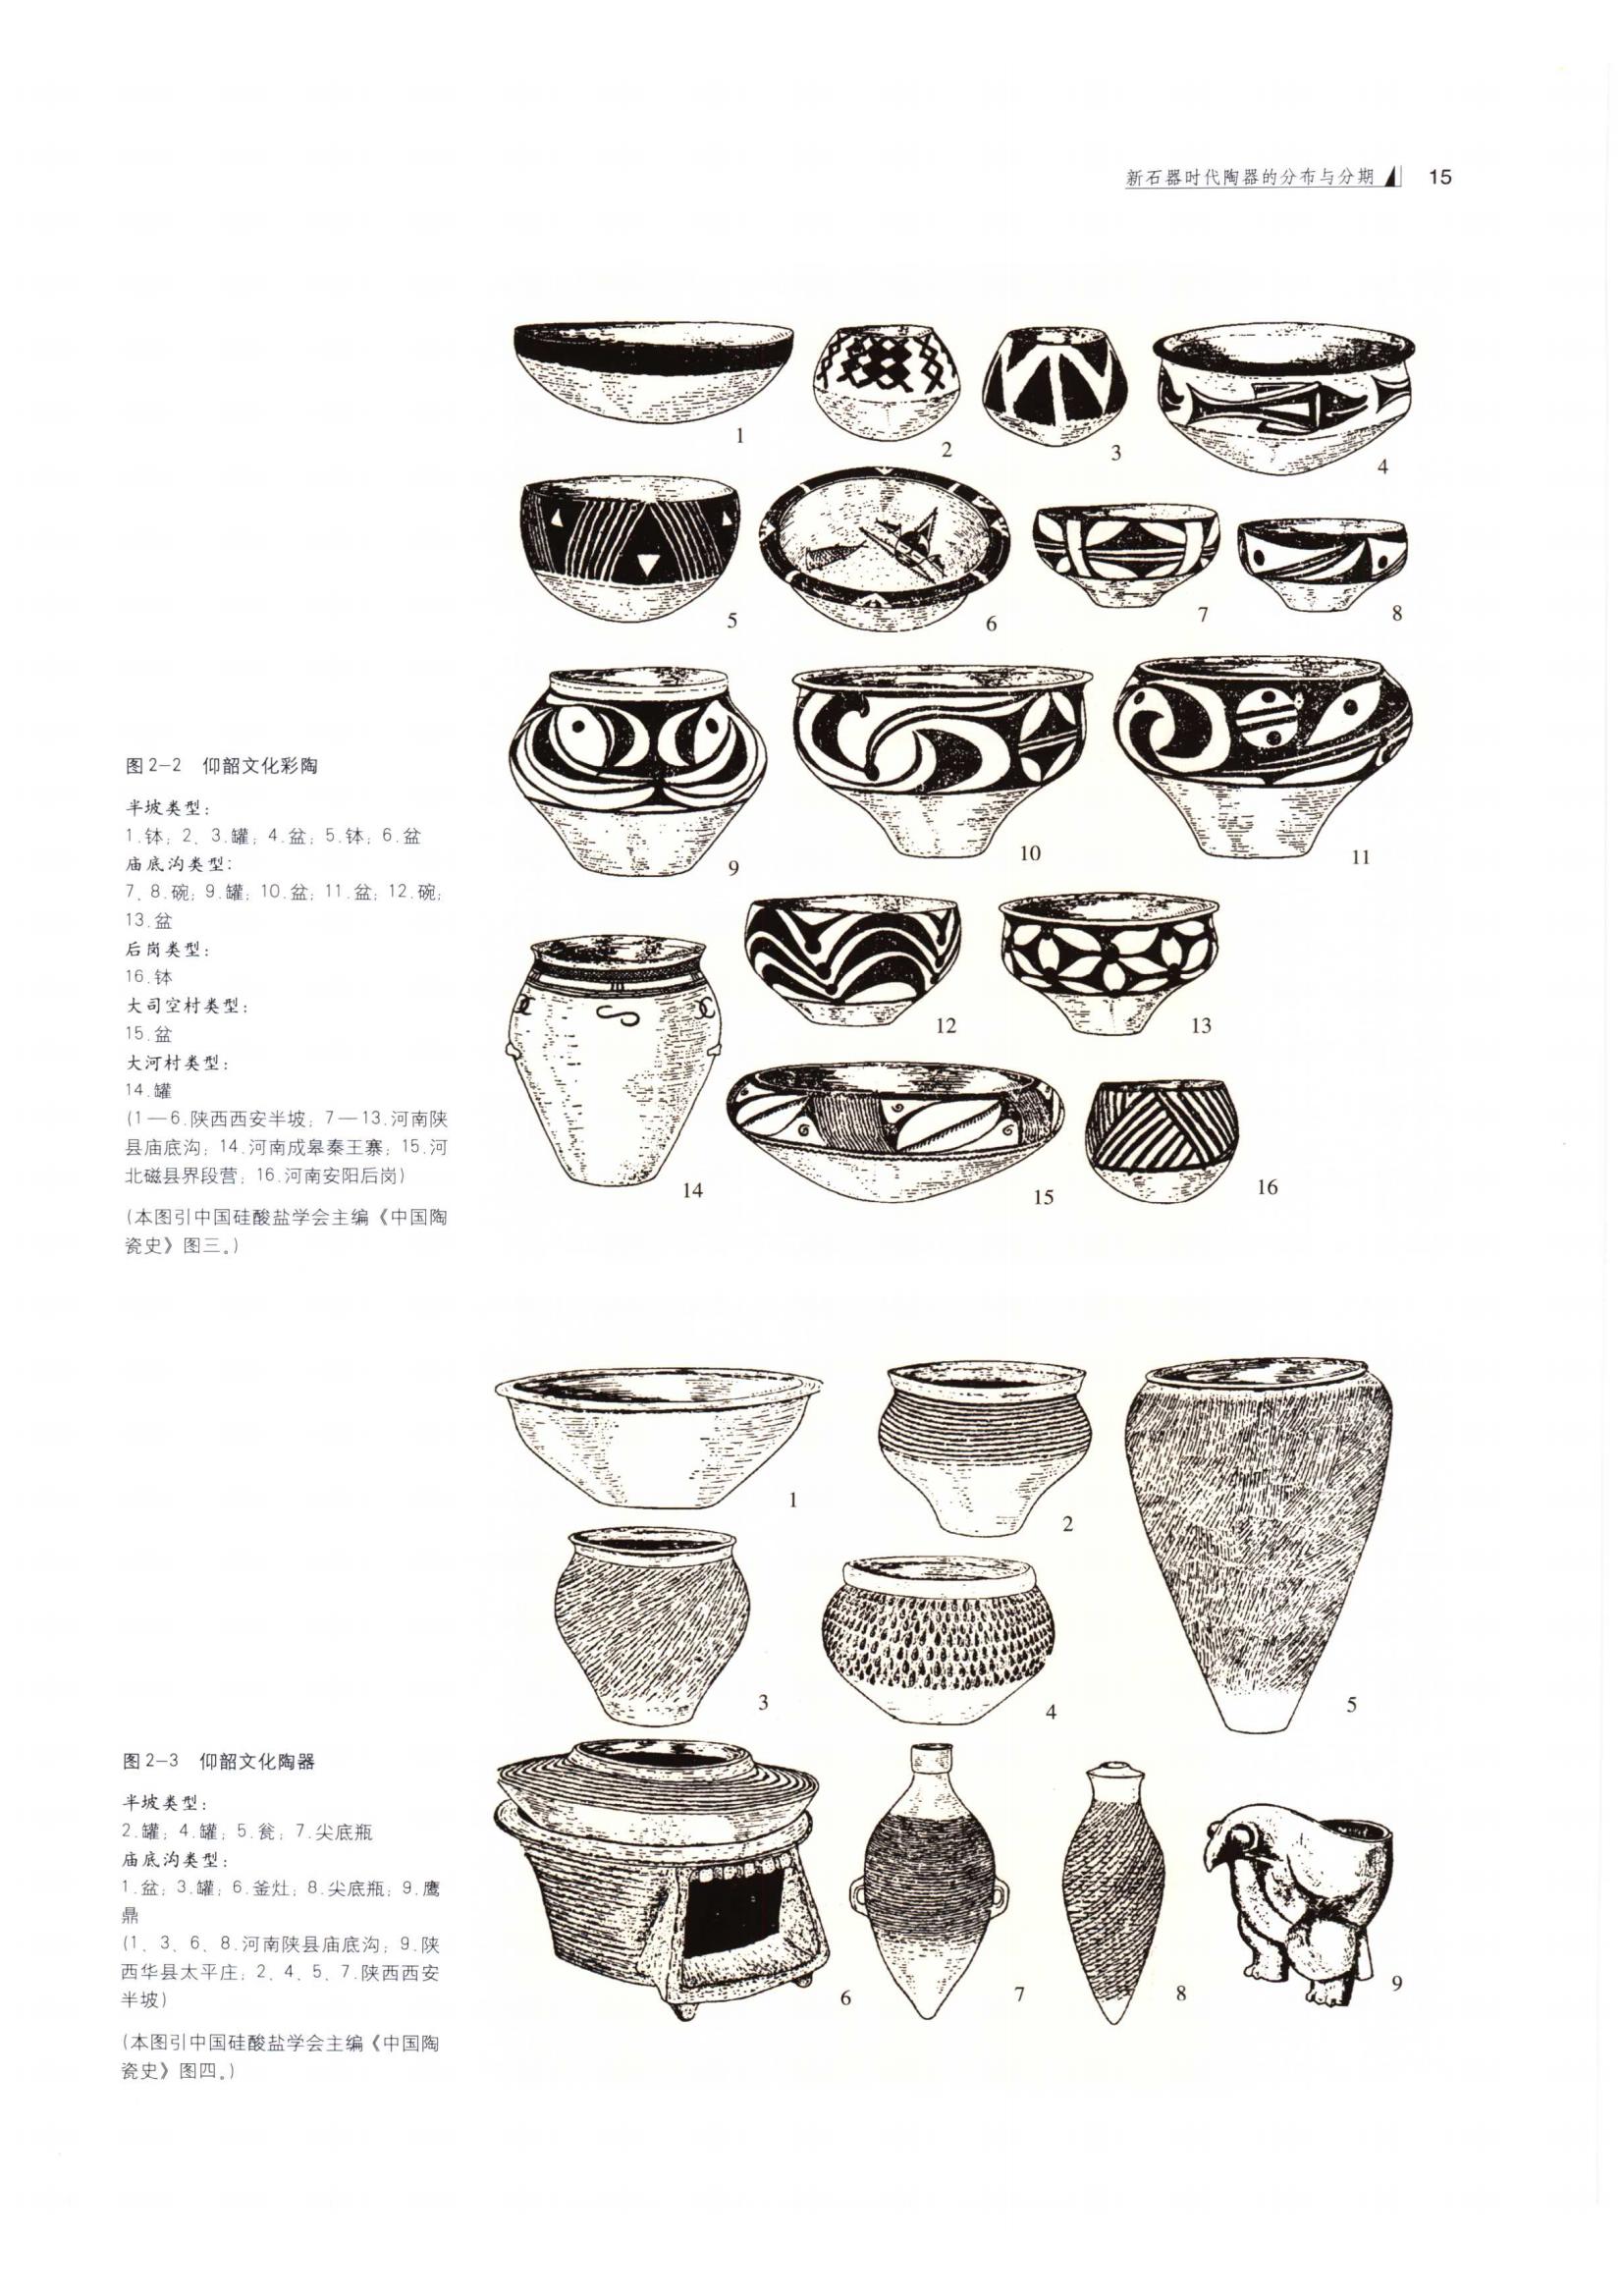 同時期陶器類型